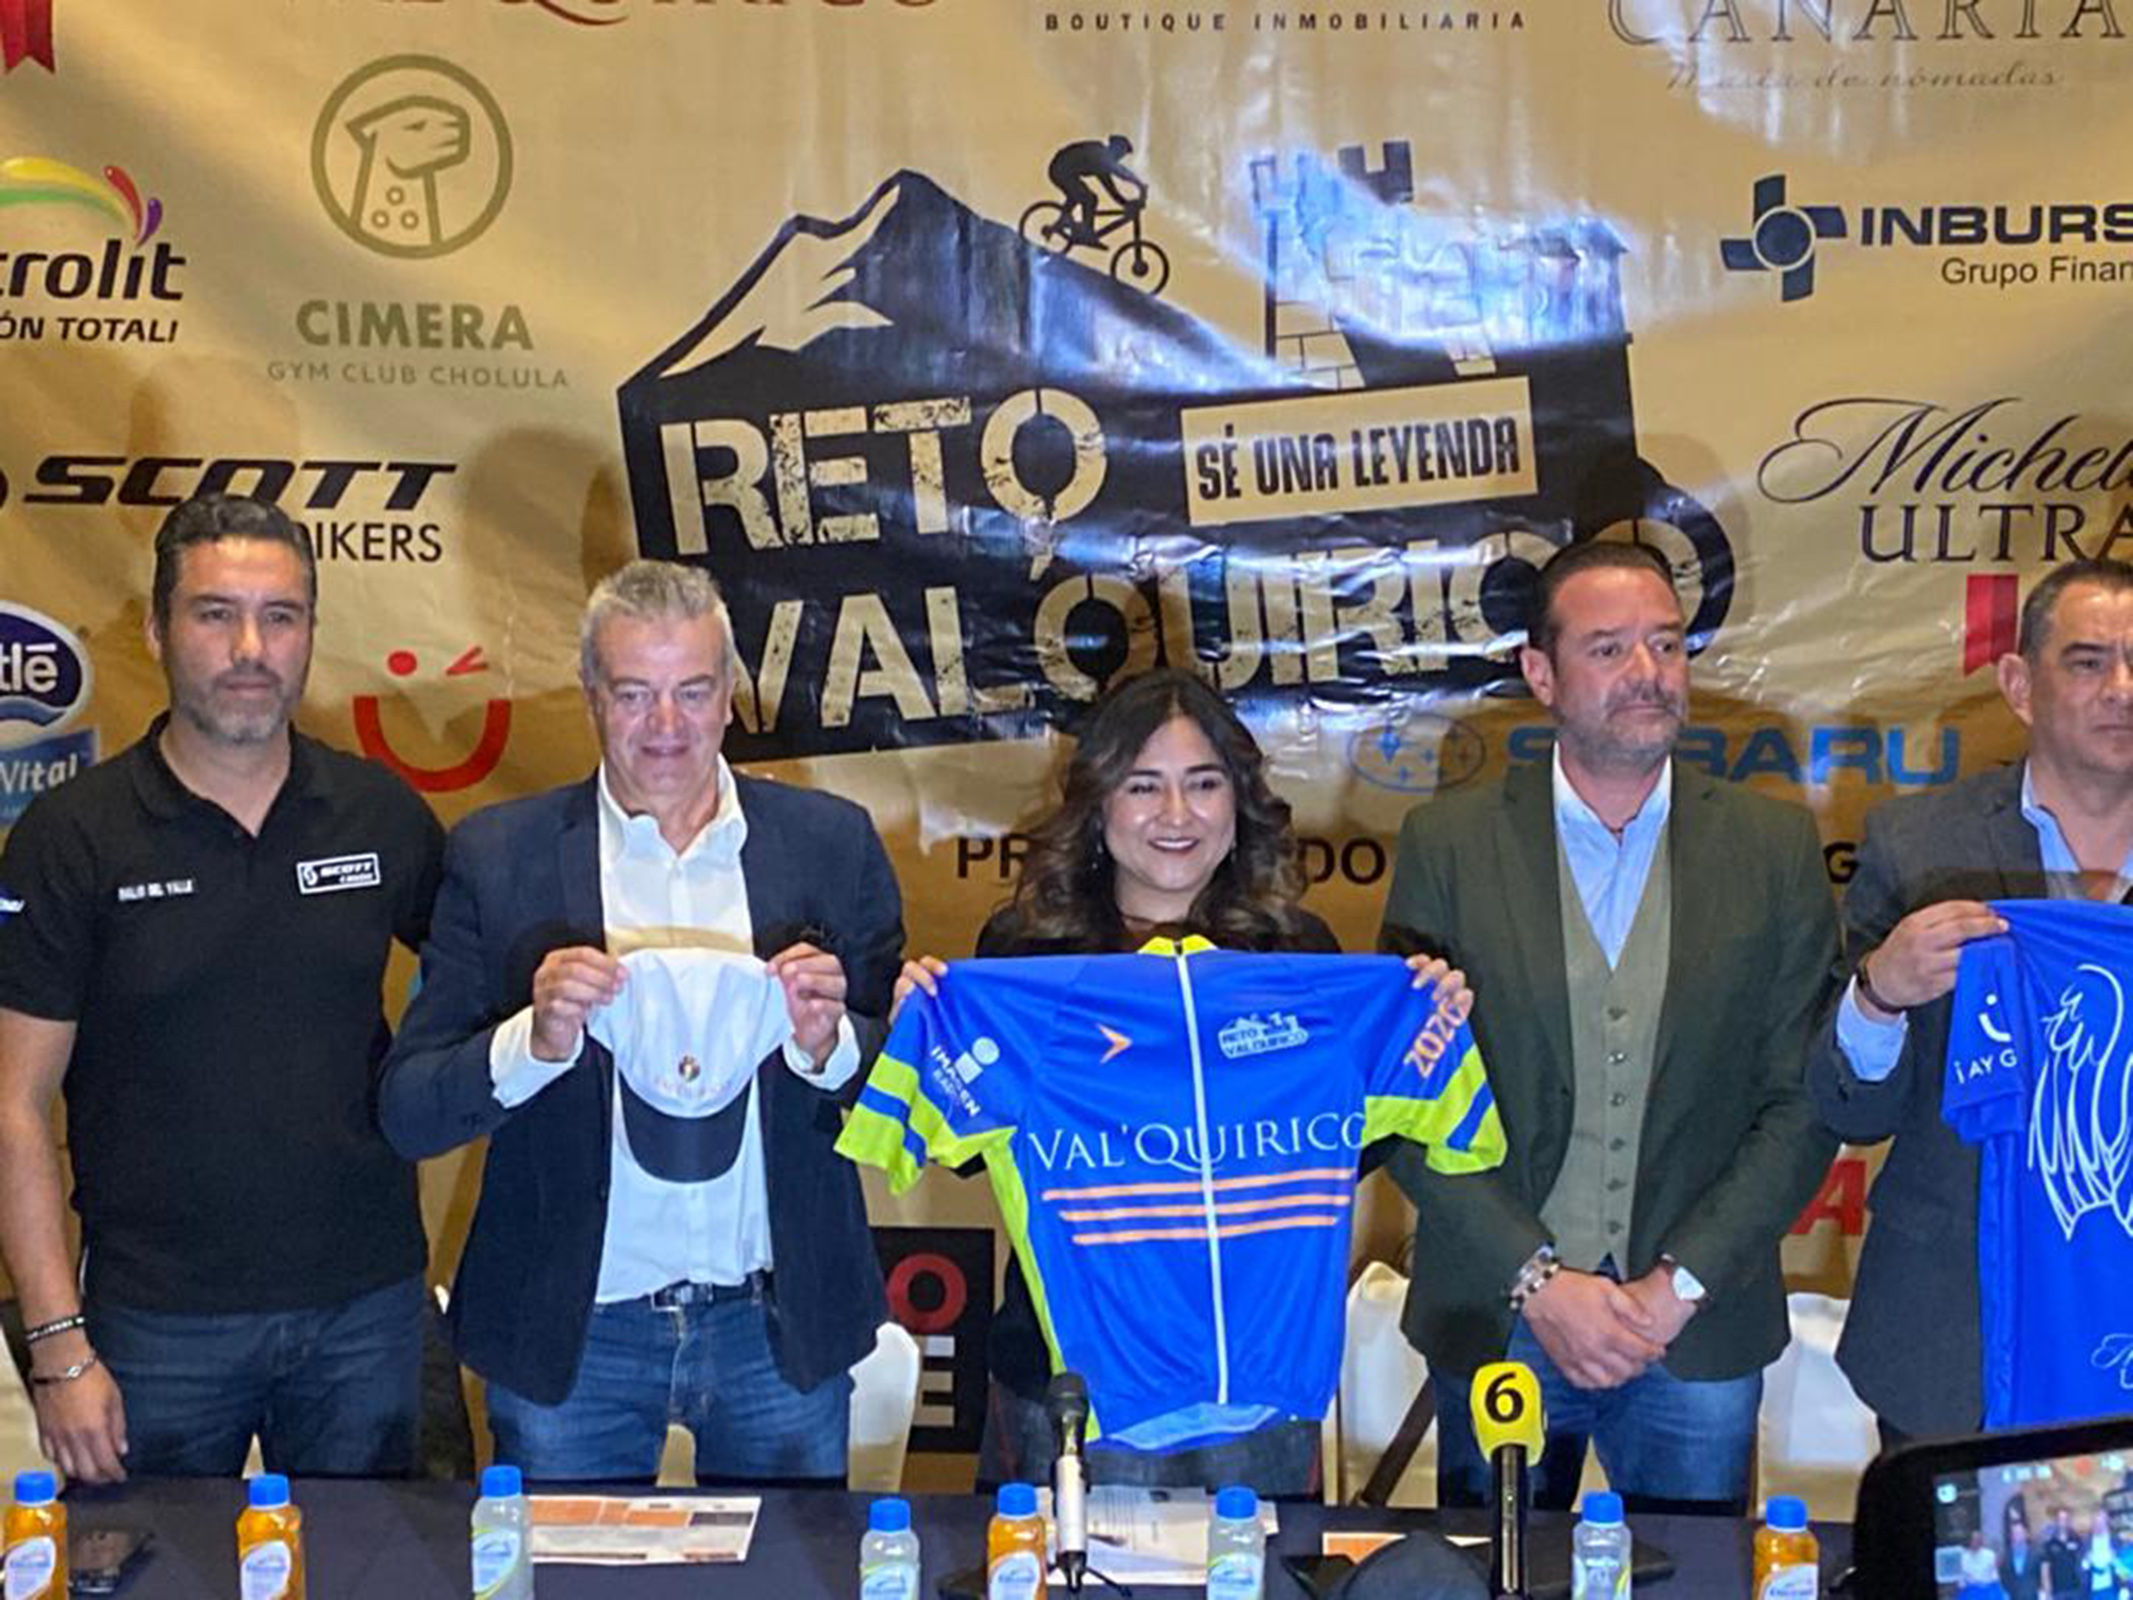 Promocionan Secture y Val’ Quirico “Reto marathon bike”en Puebla.